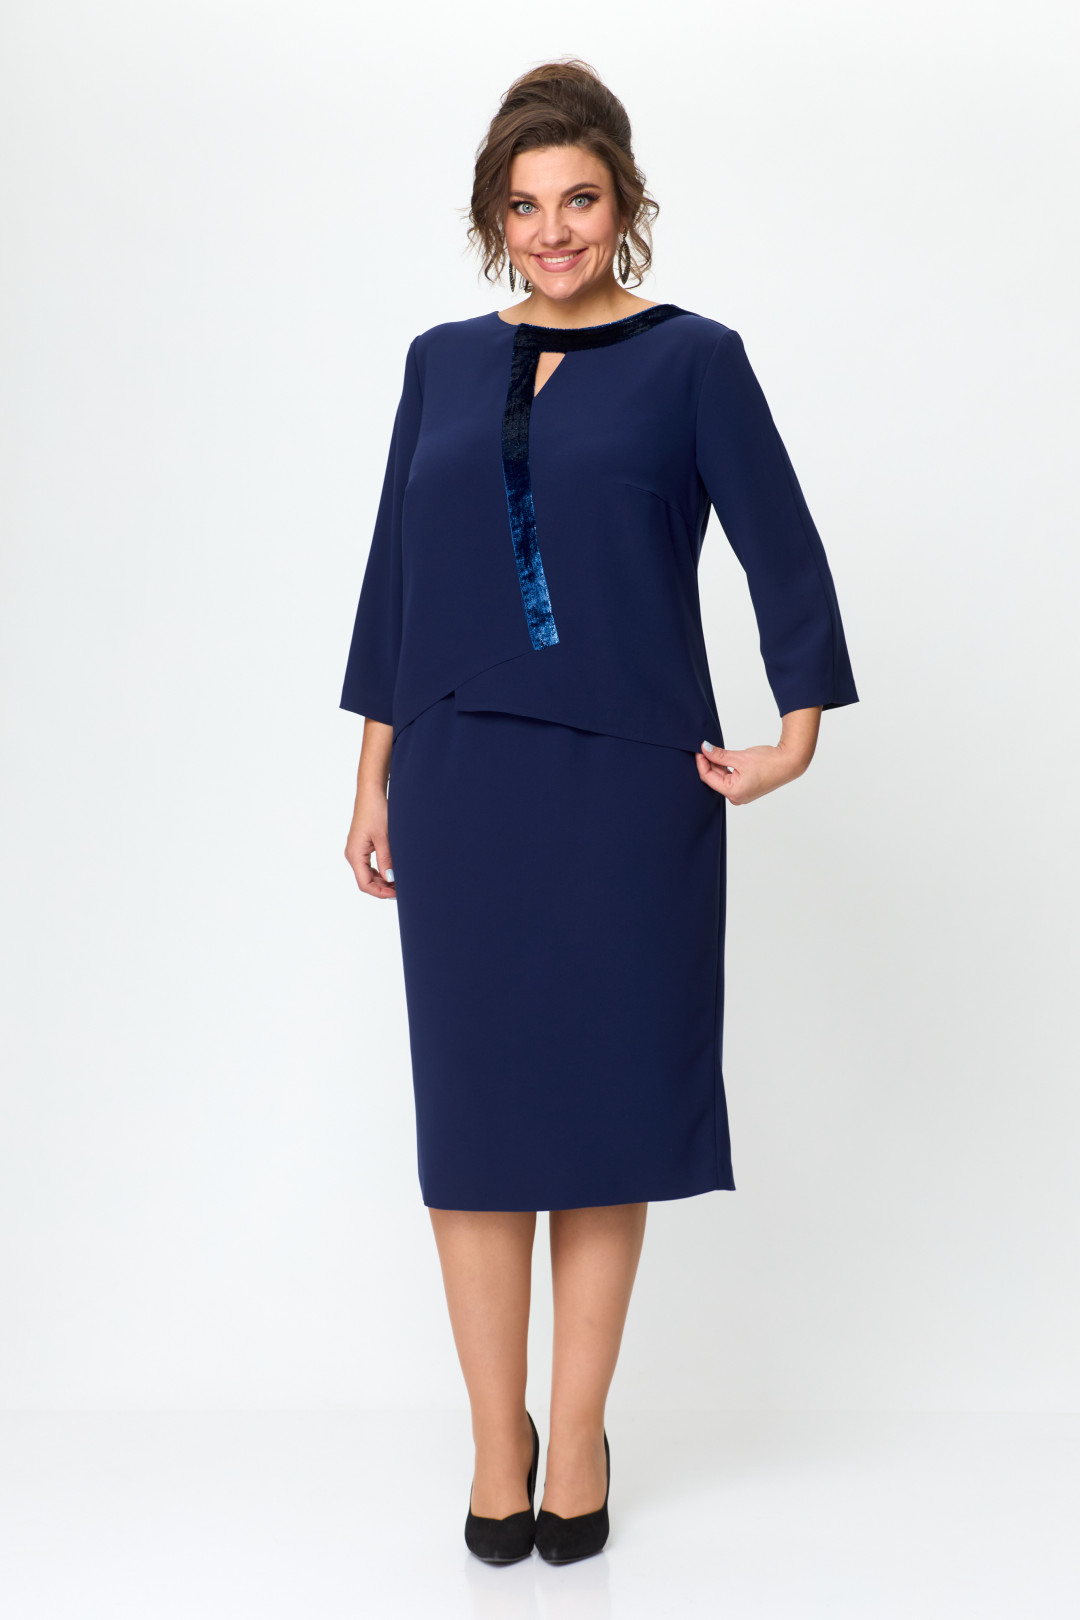 Платье Карина Делюкс М-1201 синий